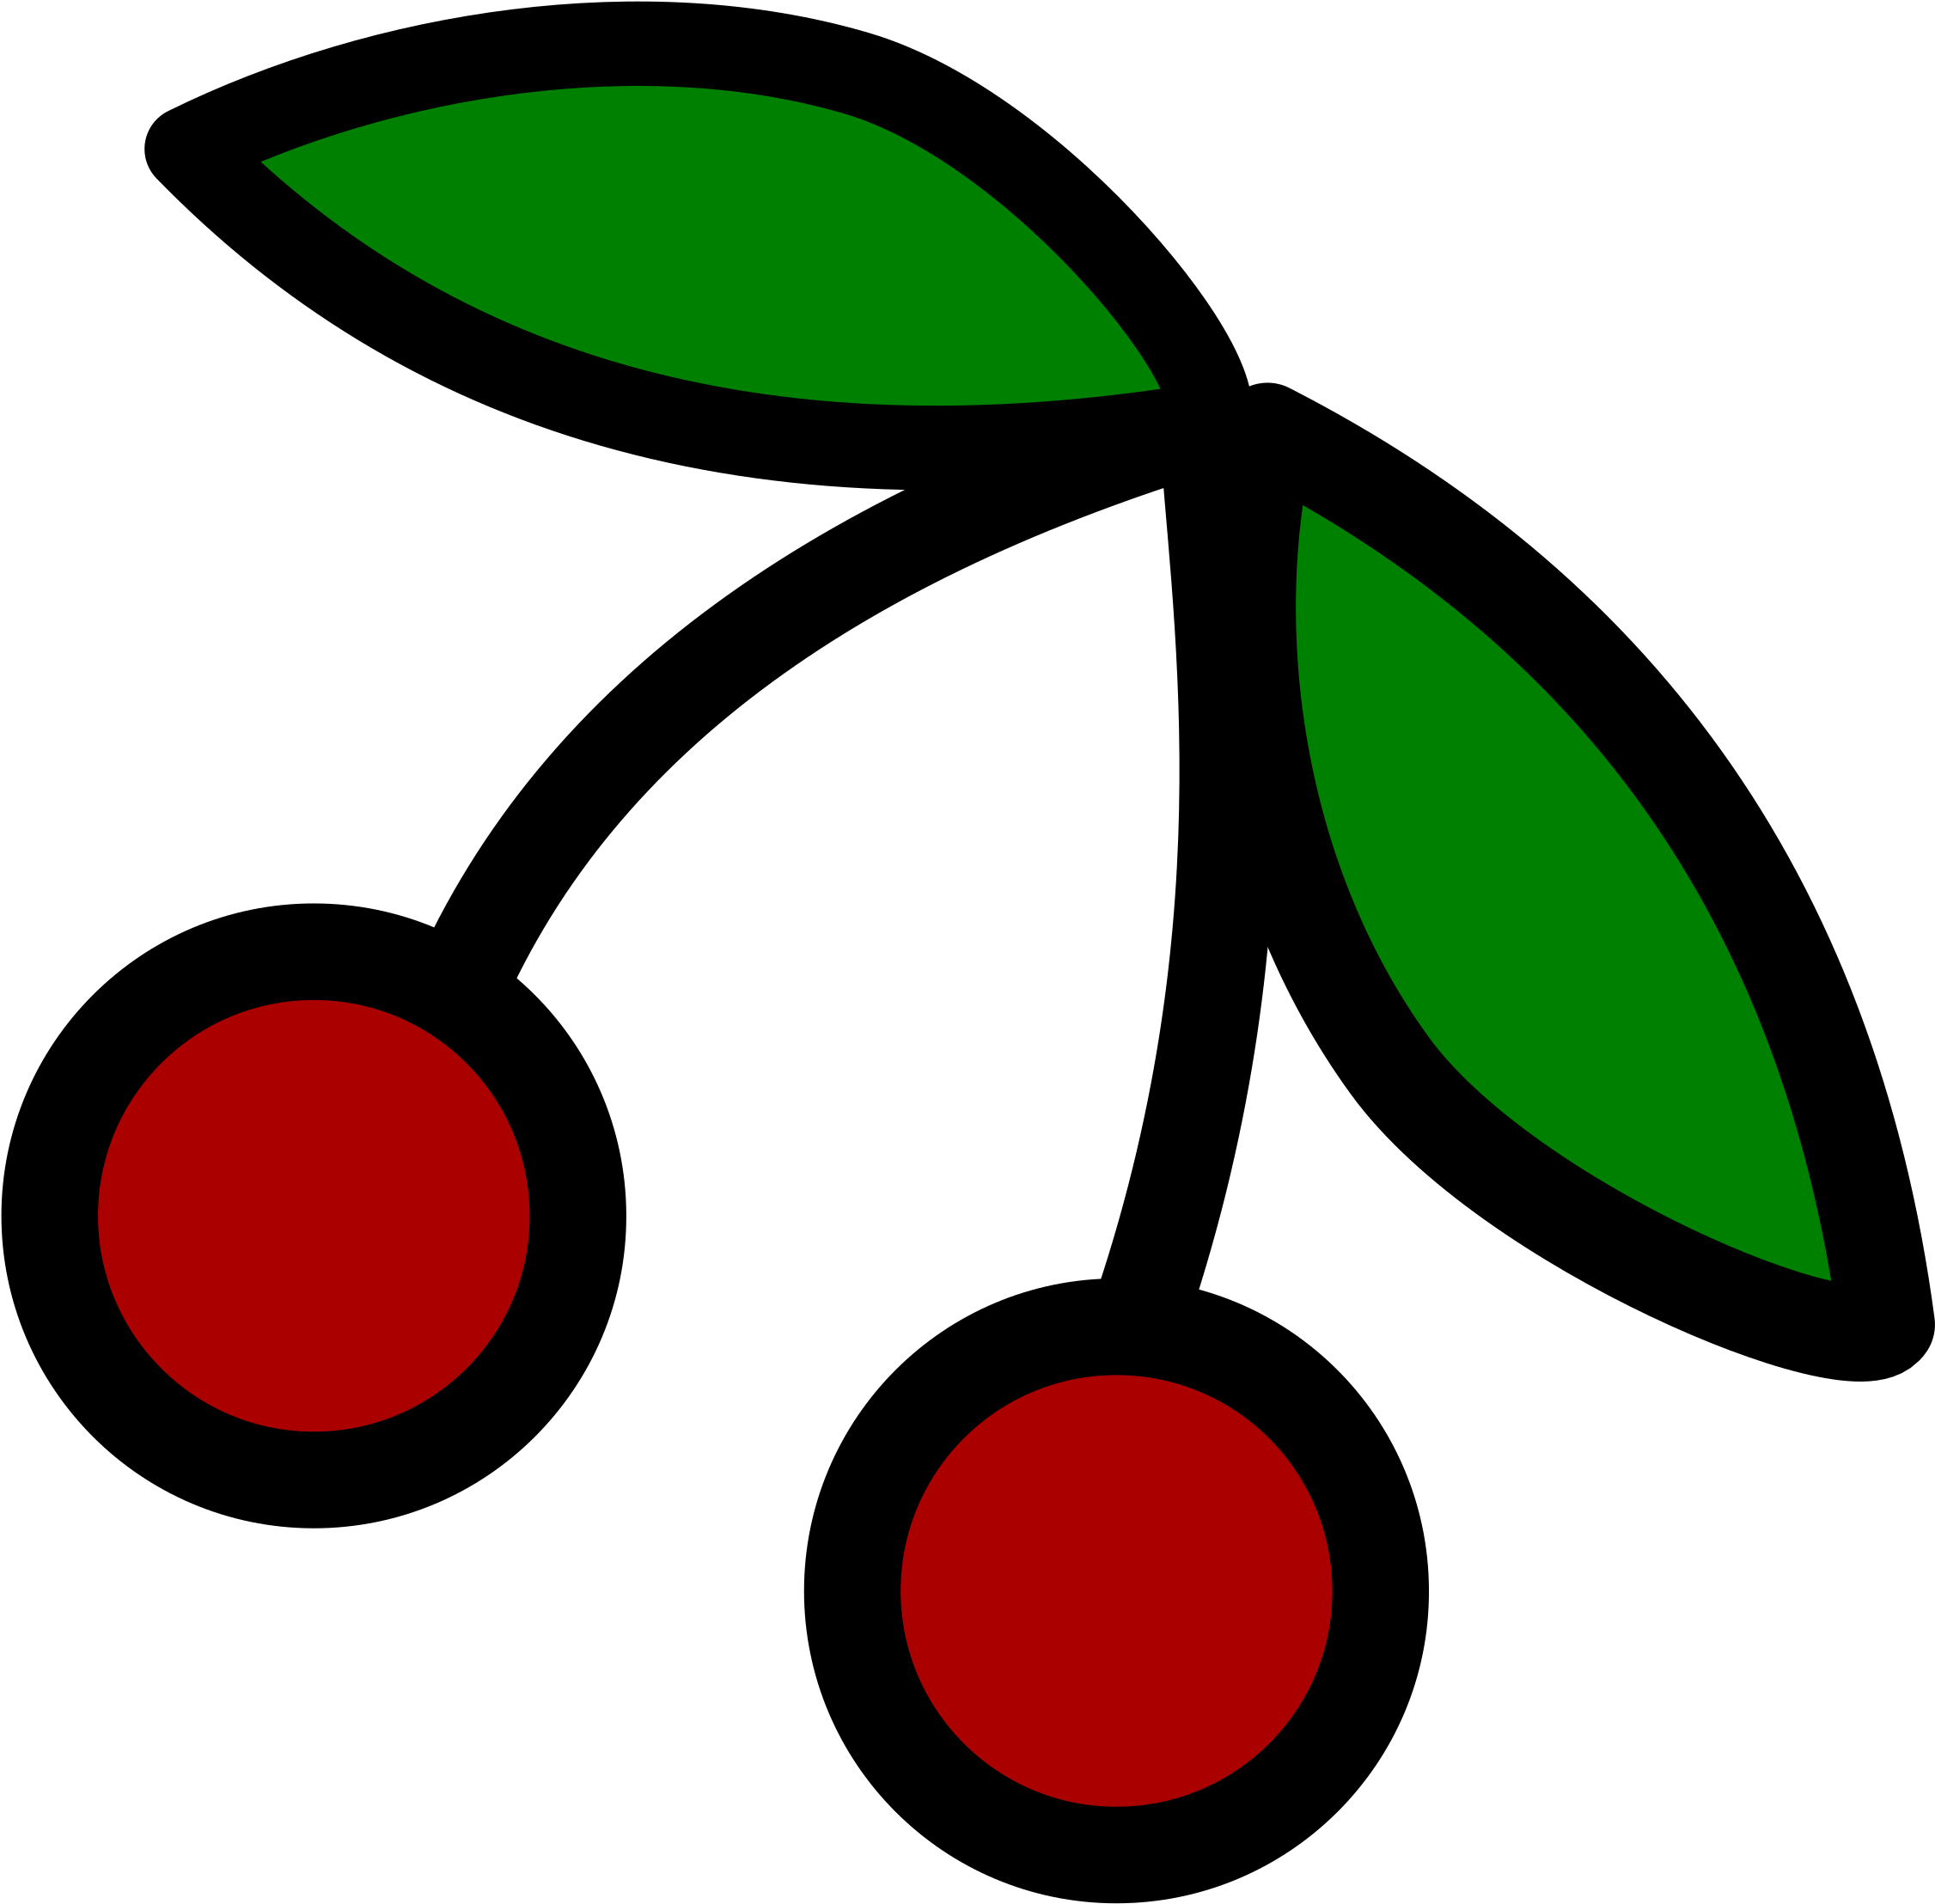 Cherries Icon - Cherry Icon Png (2400x2400)